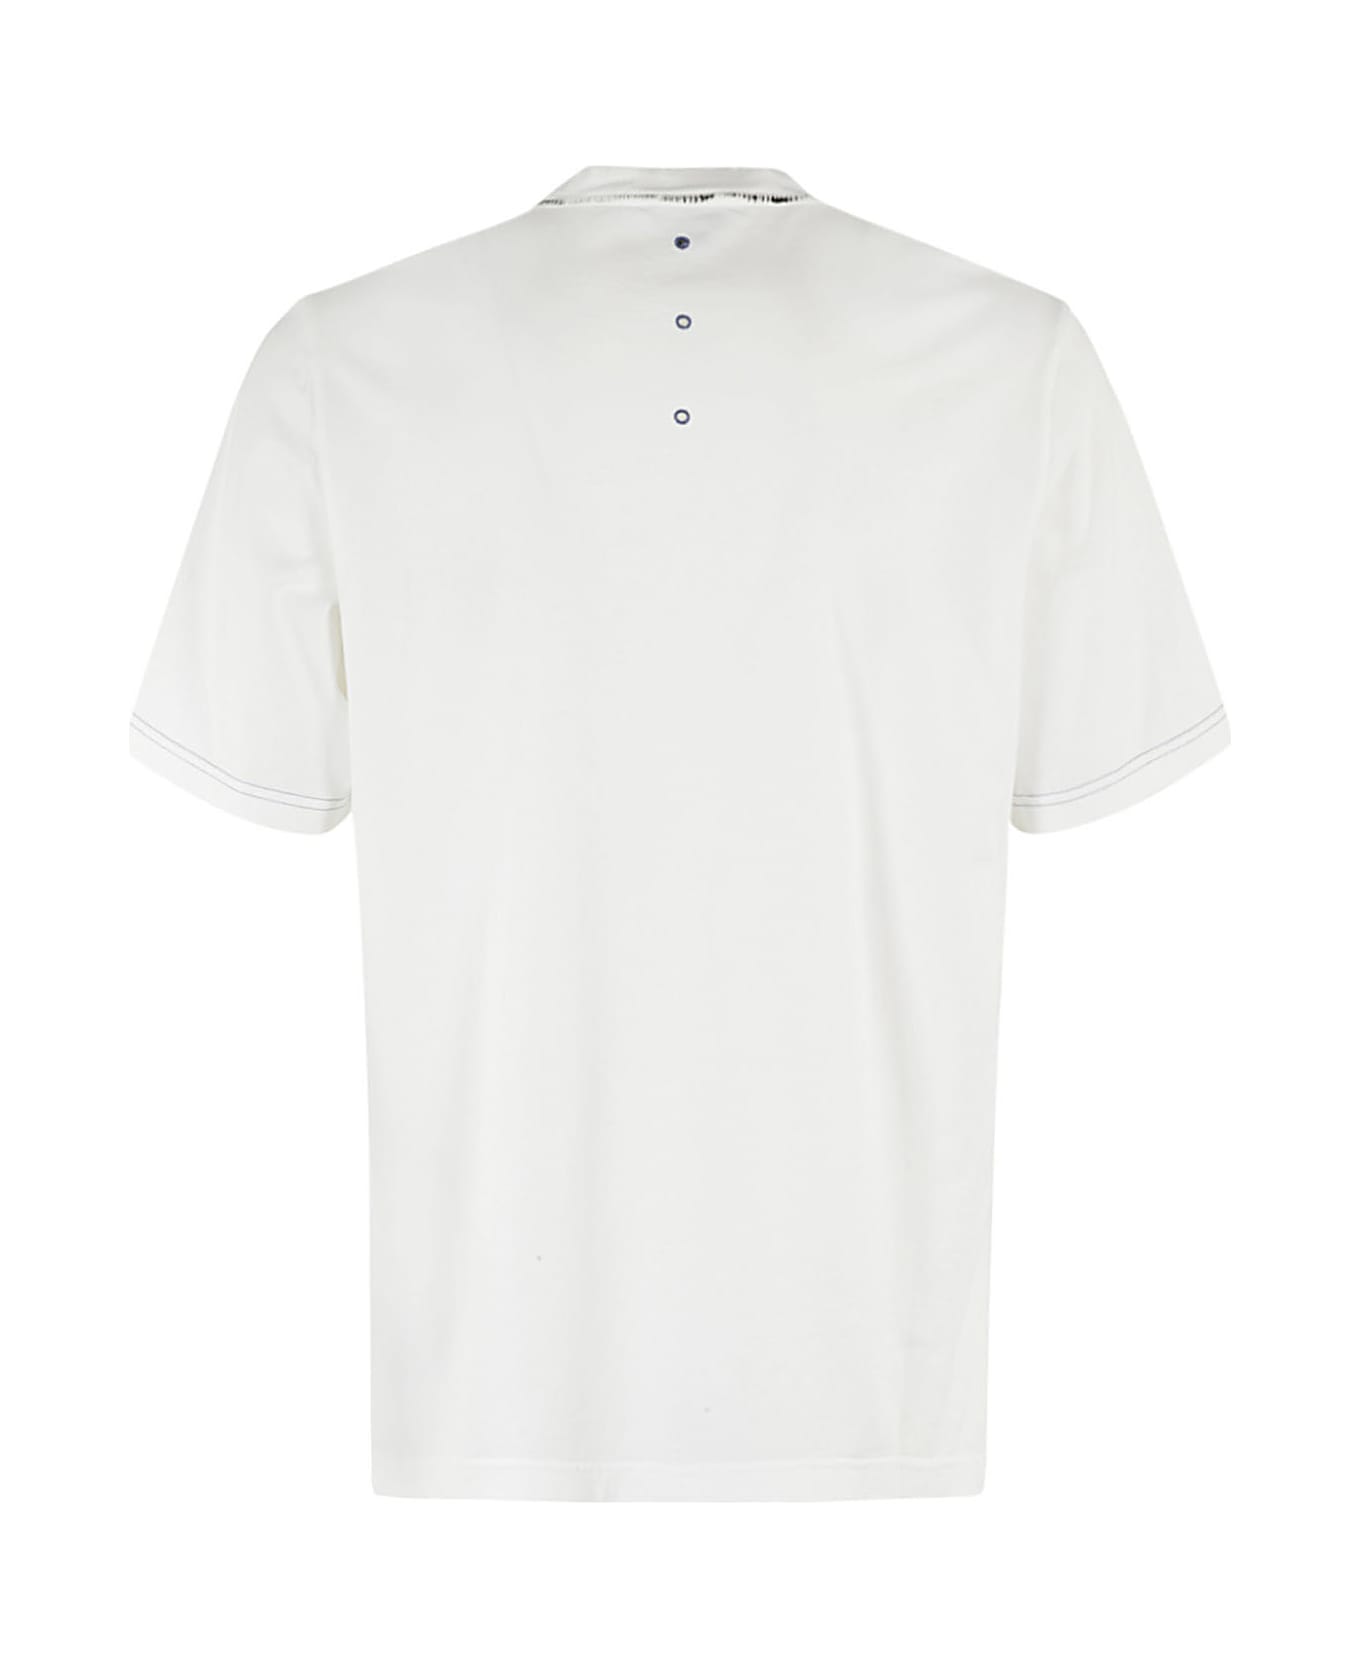 Premiata T Shirt - Bianco シャツ